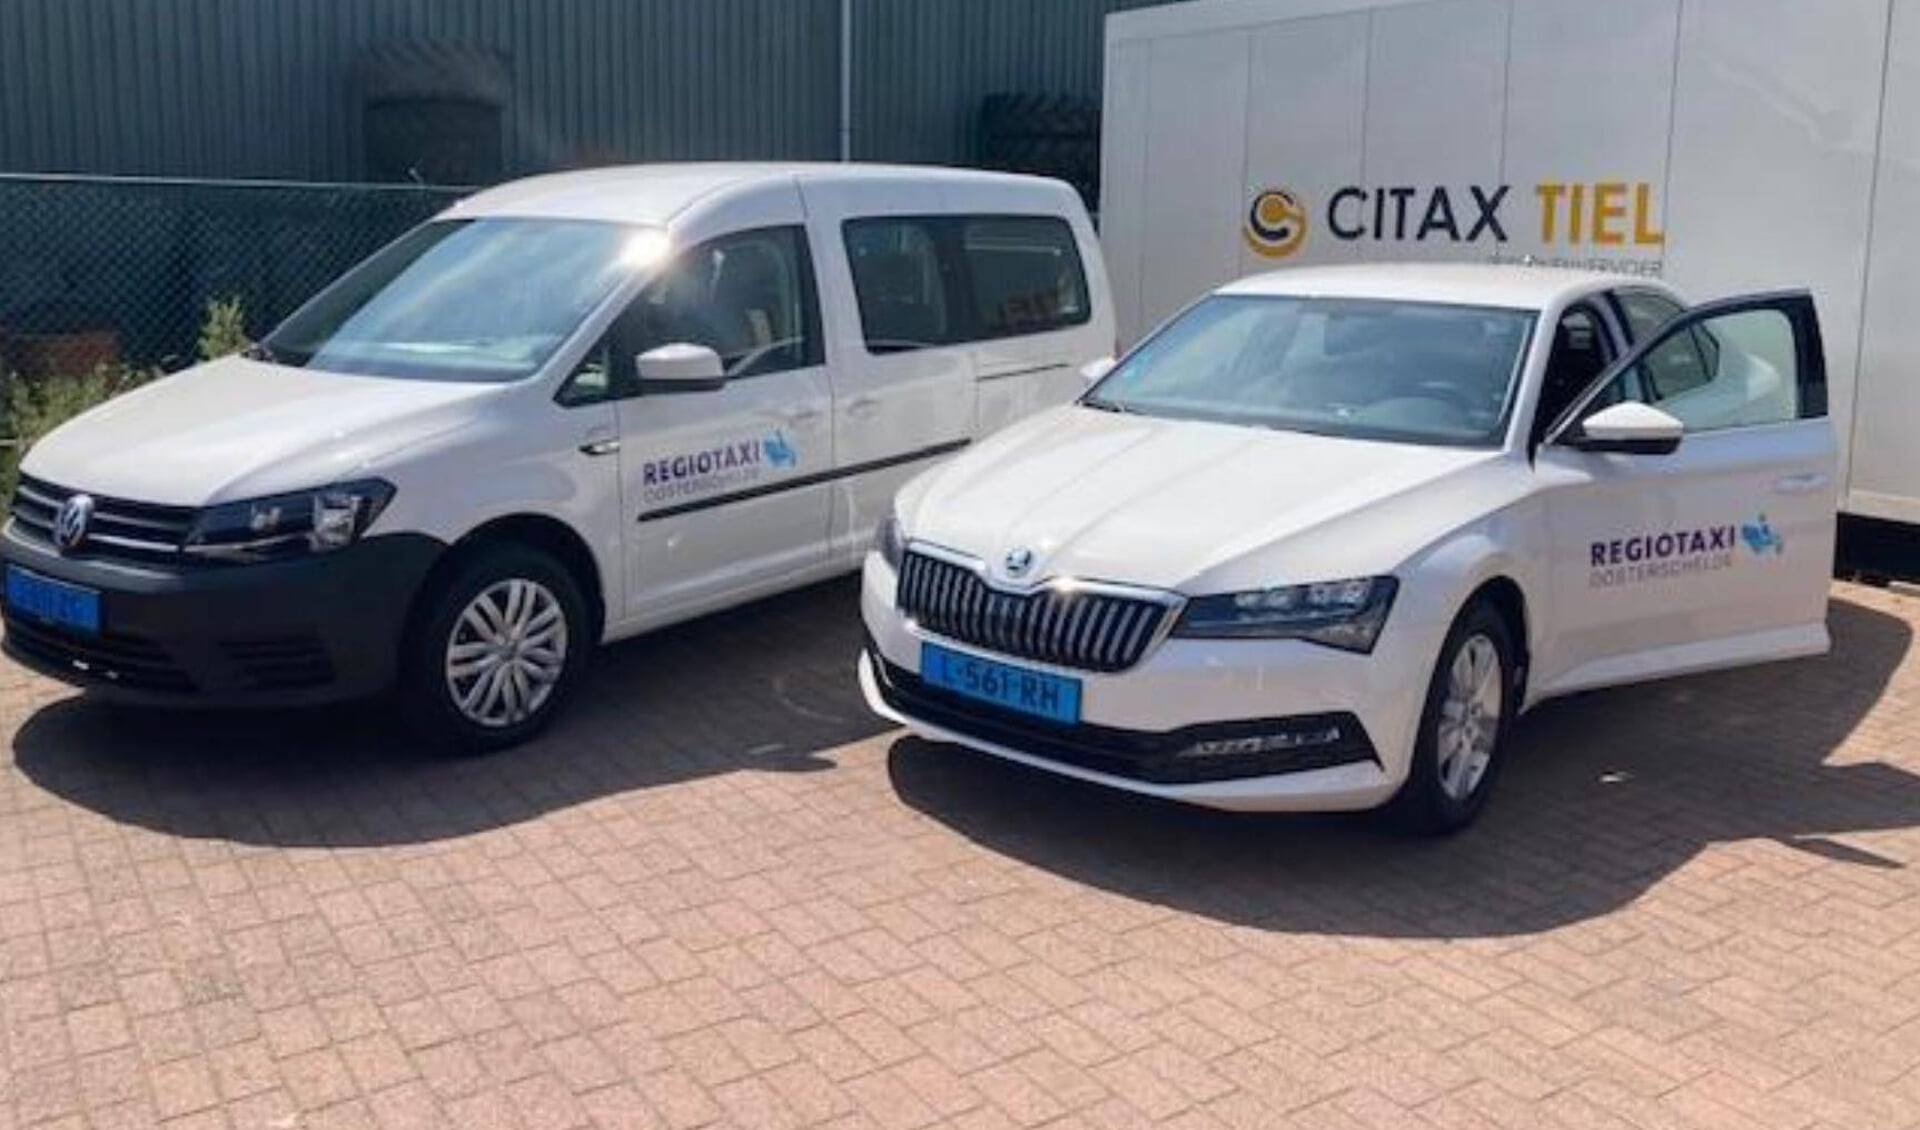 De nieuwe auto's van taxibedrijf Citax Tiel.